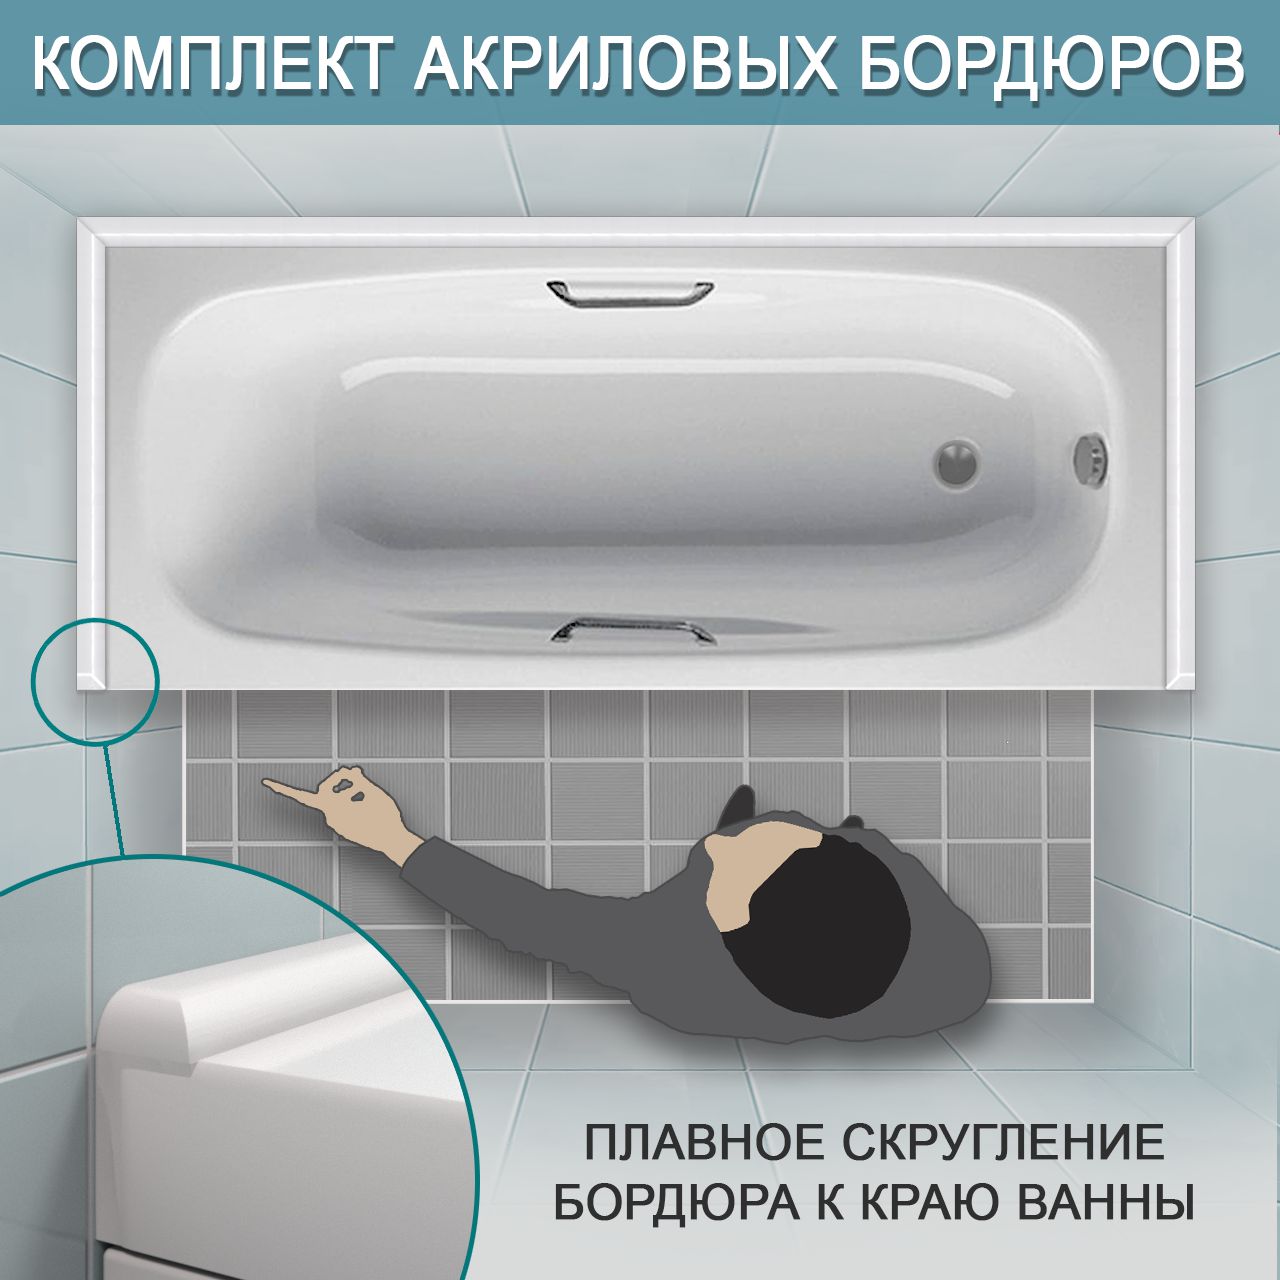 Комплект акриловых бордюров для ванной ПШ24 интернет-магазин BNV